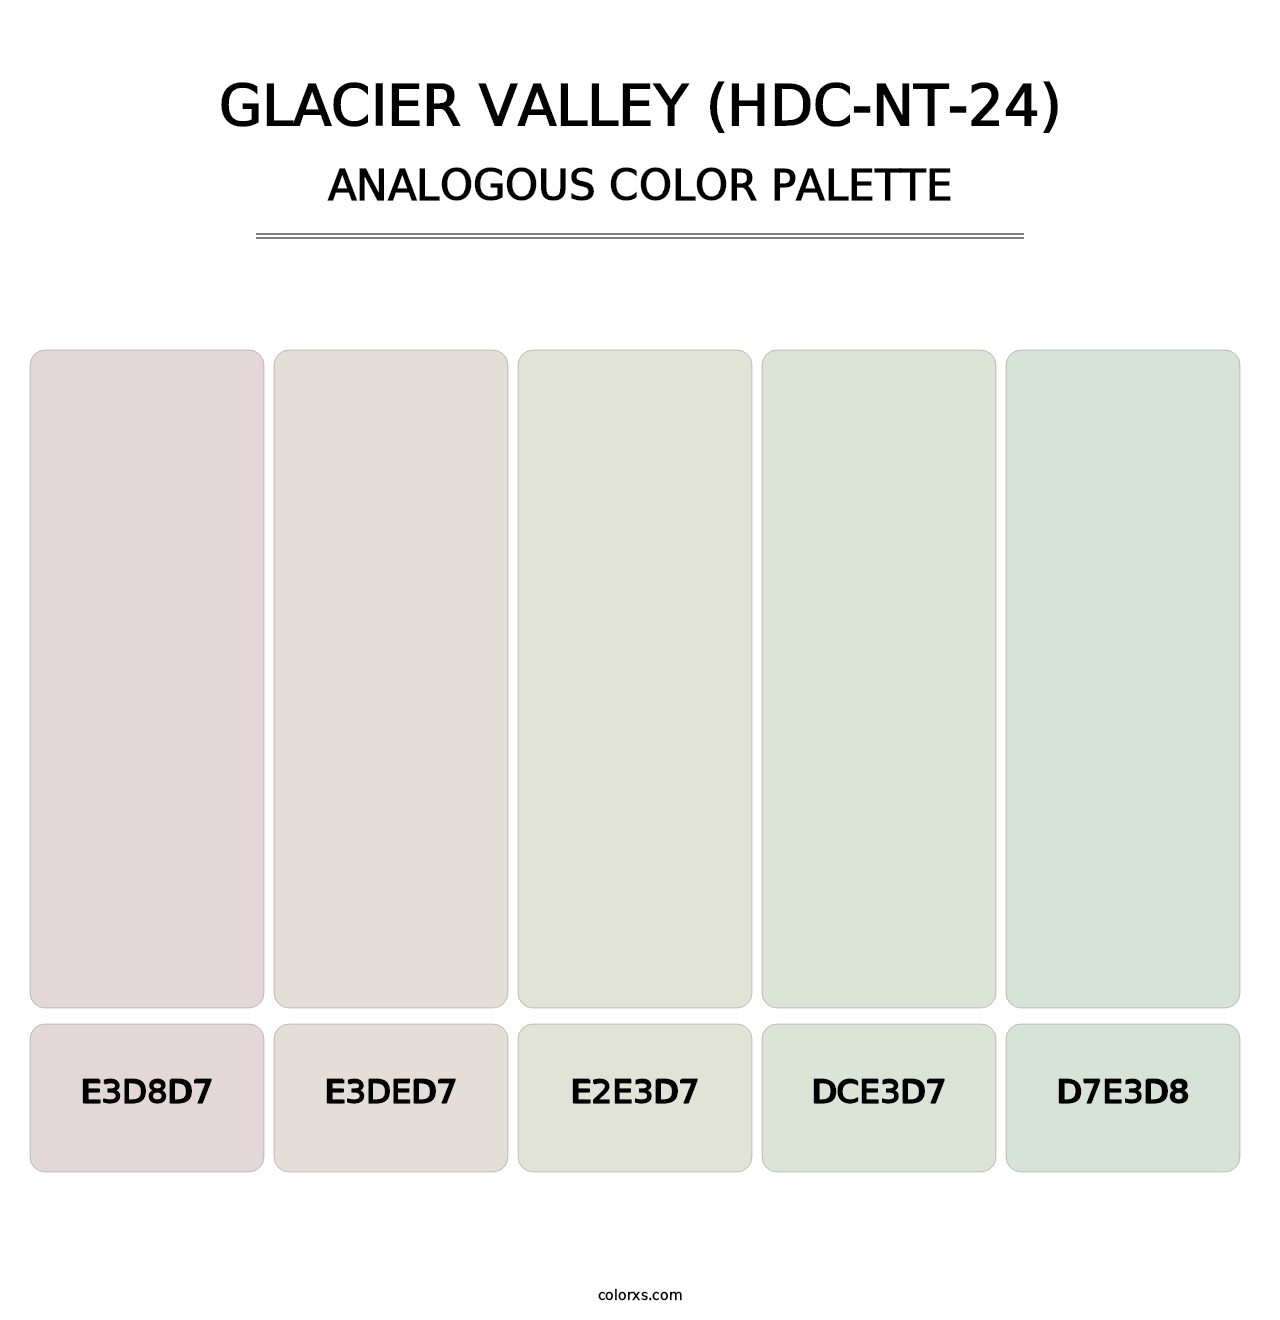 Glacier Valley (HDC-NT-24) - Analogous Color Palette